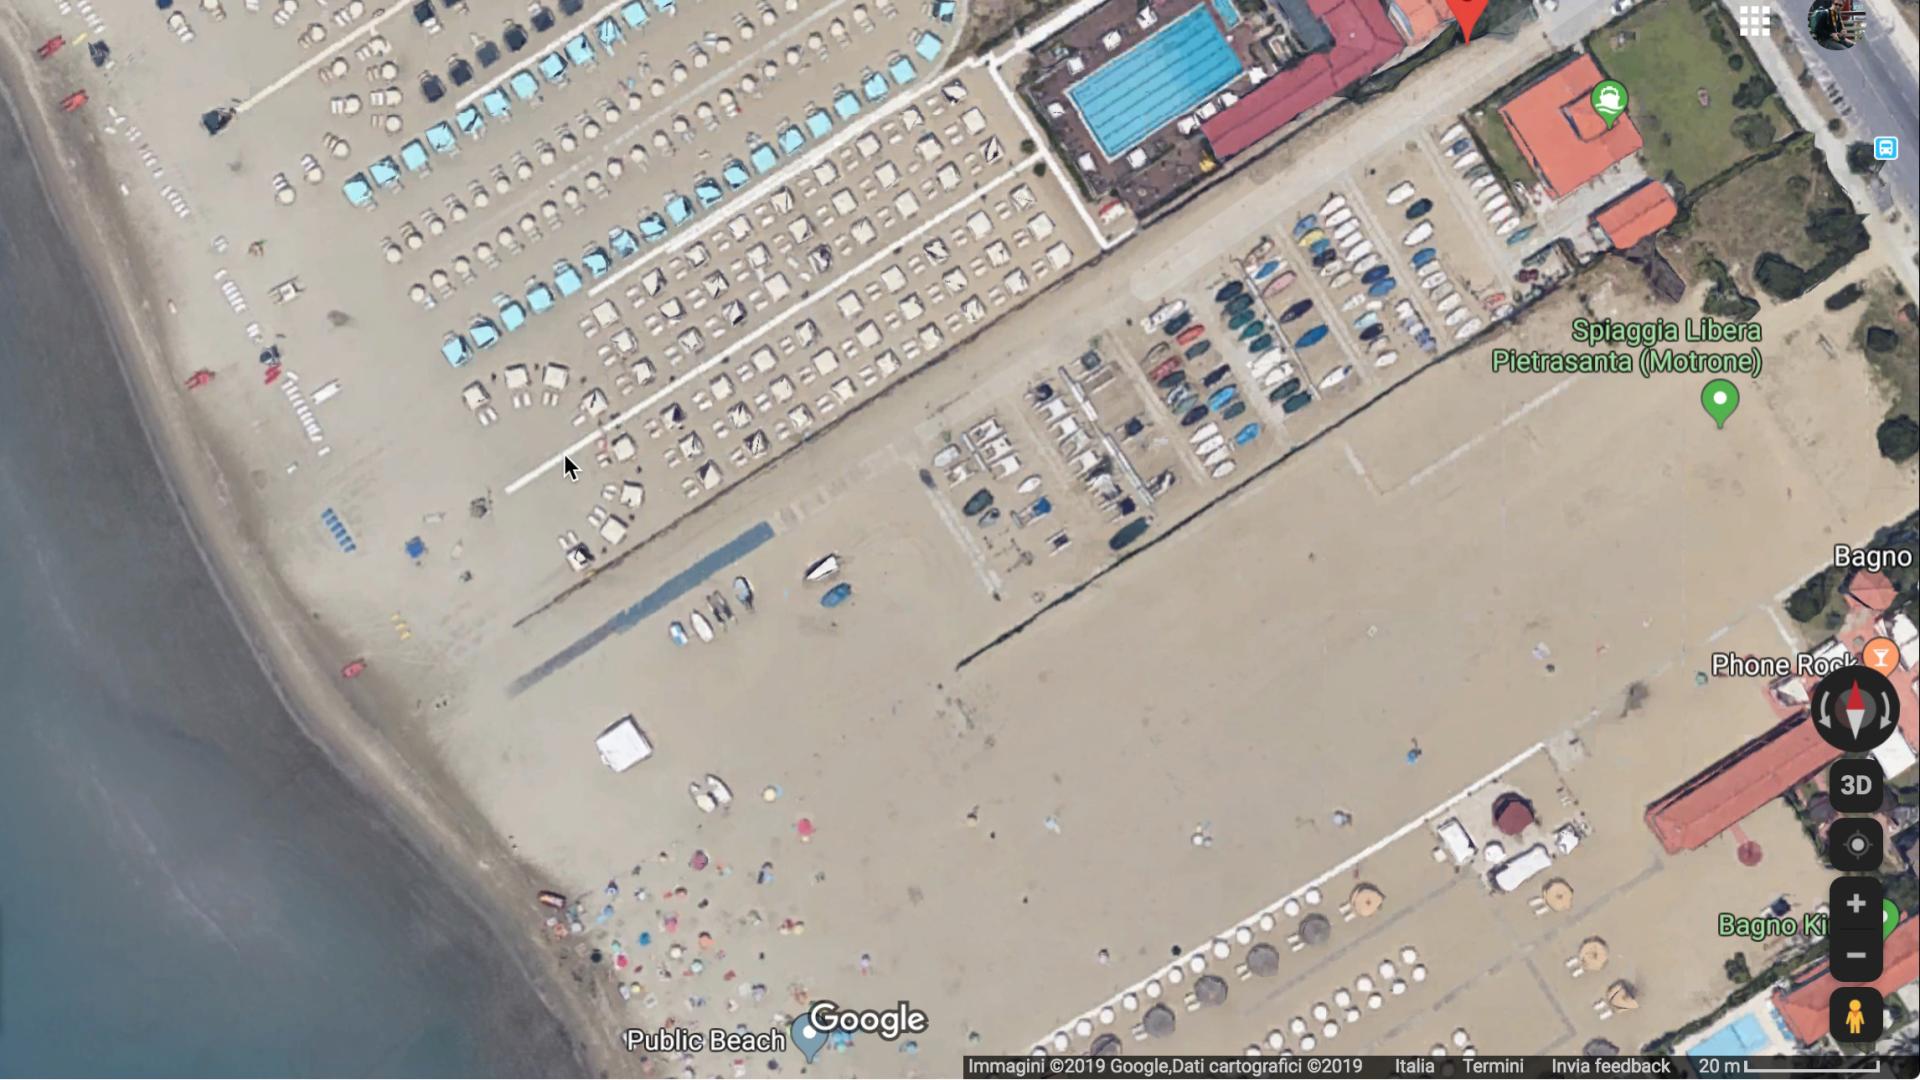 Scivolo Marina di Pietrasanta, Google Maps